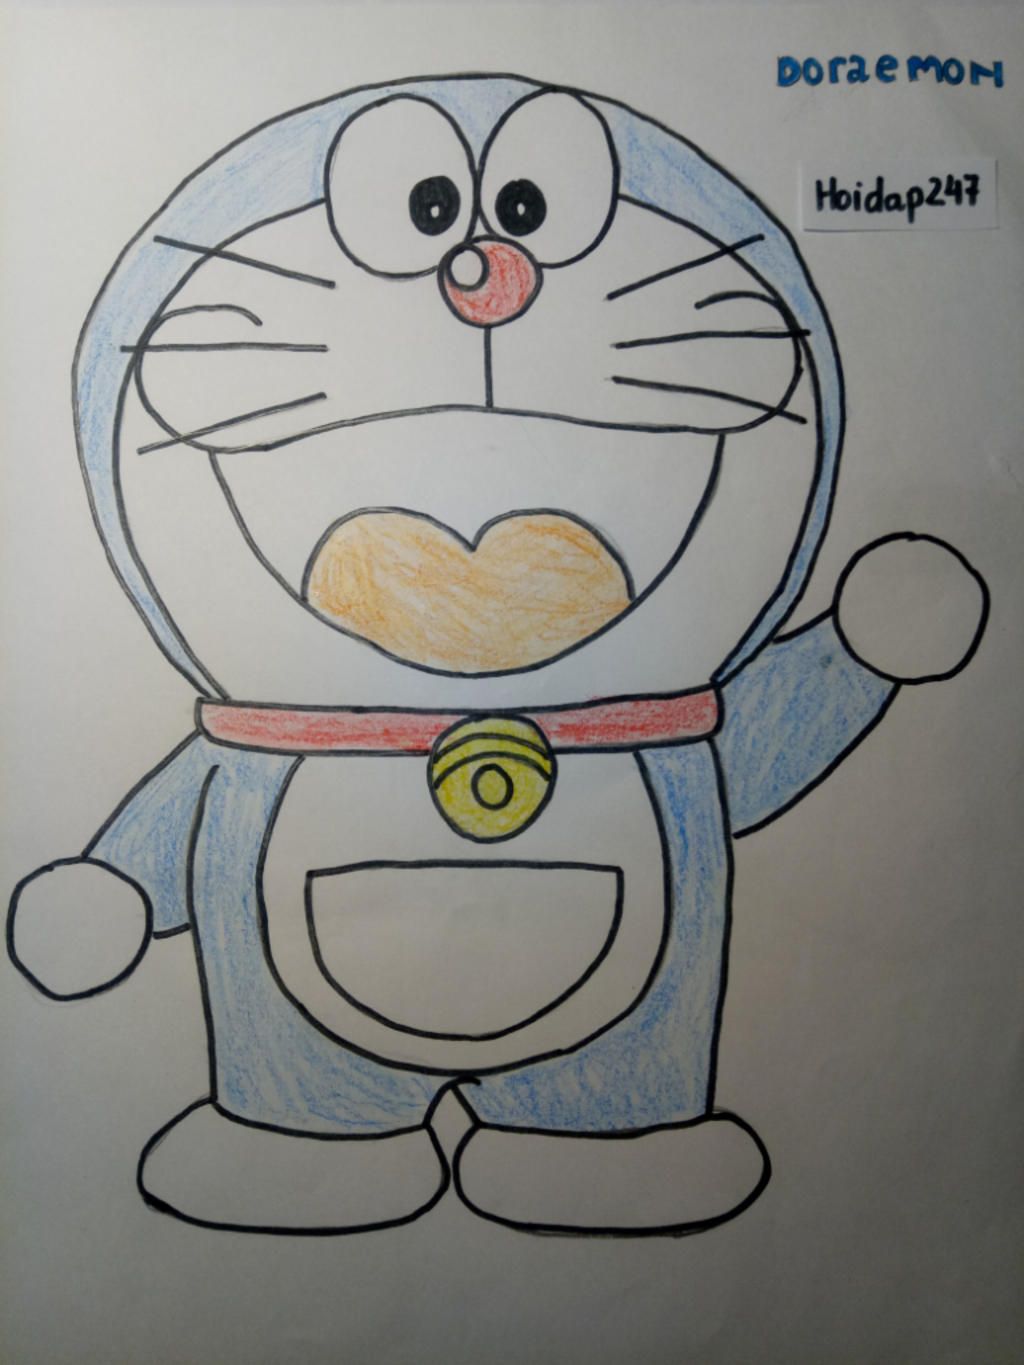 Hãy xem những bức tranh Doraemon vẽ đáng yêu nhất! Với sự kết hợp hoàn hảo giữa sắc màu và nét vẽ tinh tế, các tác phẩm này sẽ khiến bạn mê mẩn ngay từ cái nhìn đầu tiên. Chắc chắn bạn sẽ không muốn bỏ lỡ những tác phẩm tuyệt vời này đấy!